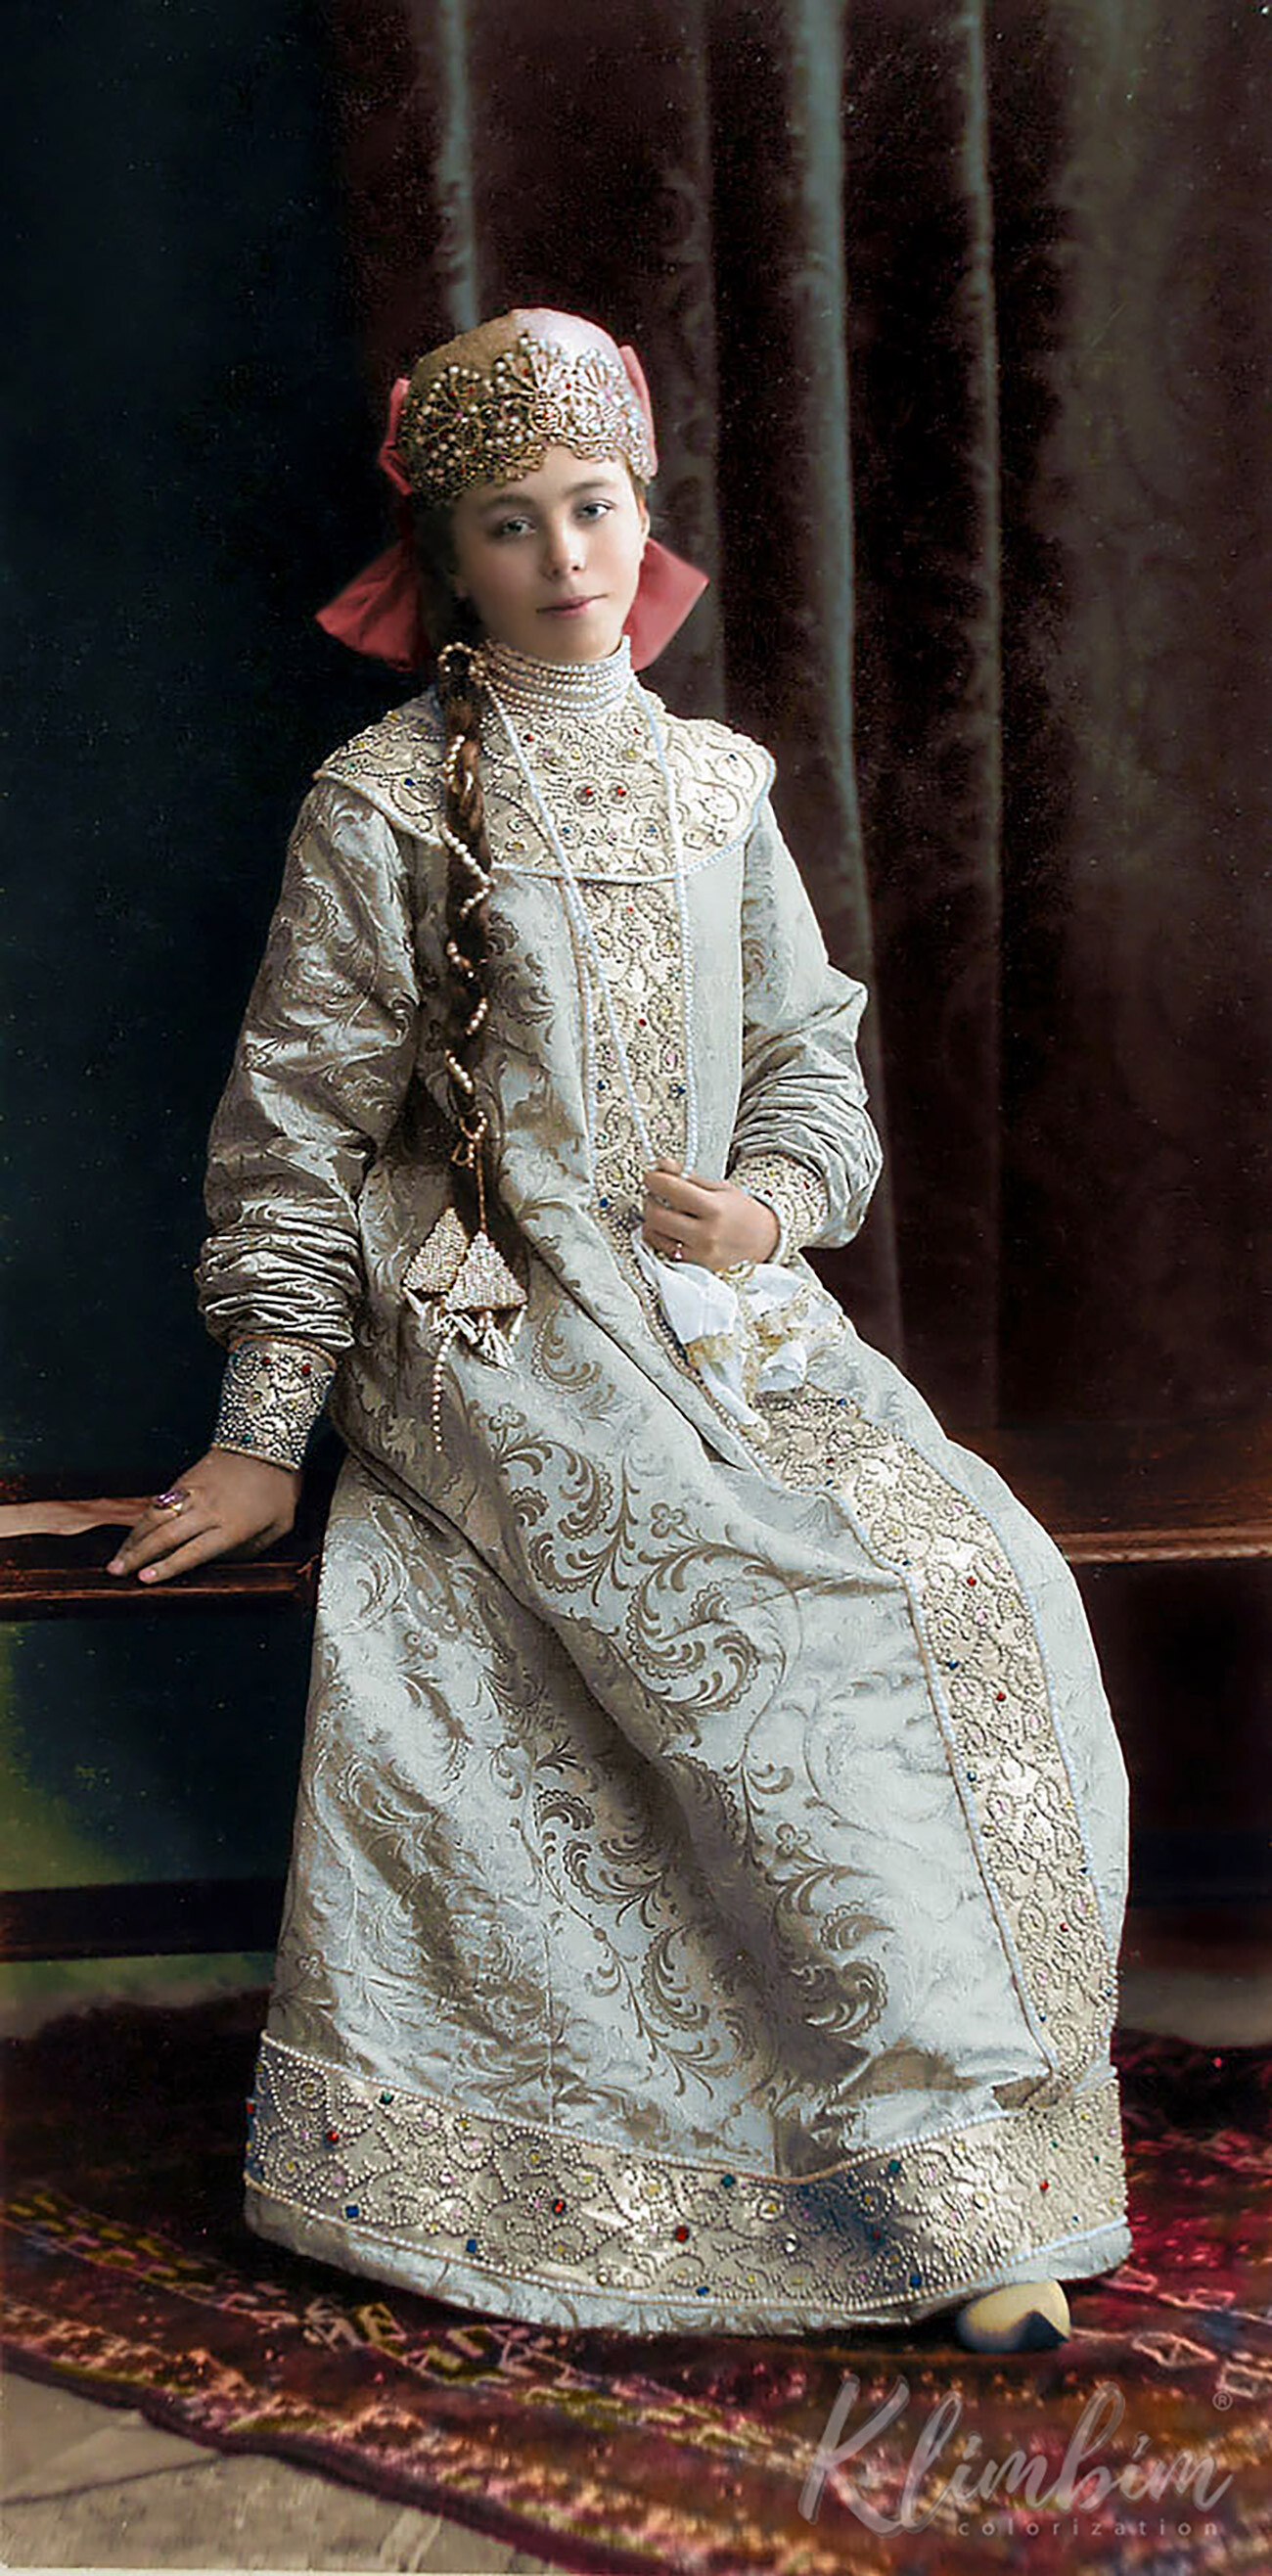 Lady-in-waiting Elizaveta Sheremetyeva